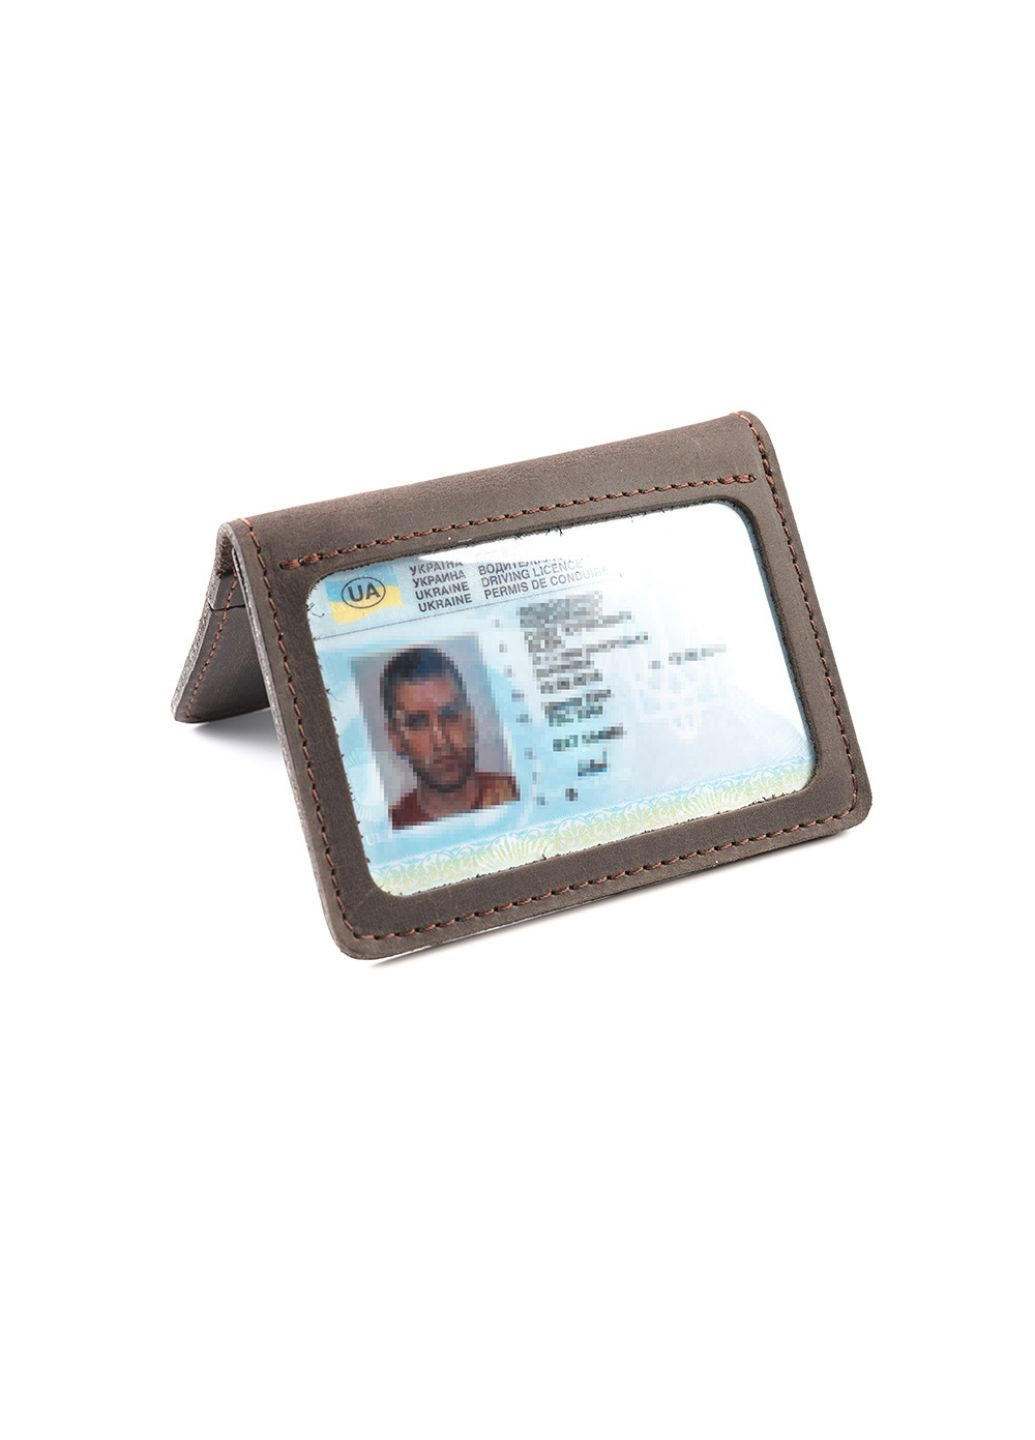 Обложка из натуральной кожи на автодокументы, права, id паспорт с отделами для карт, (Коричневый) LQ 701120 (278649328)